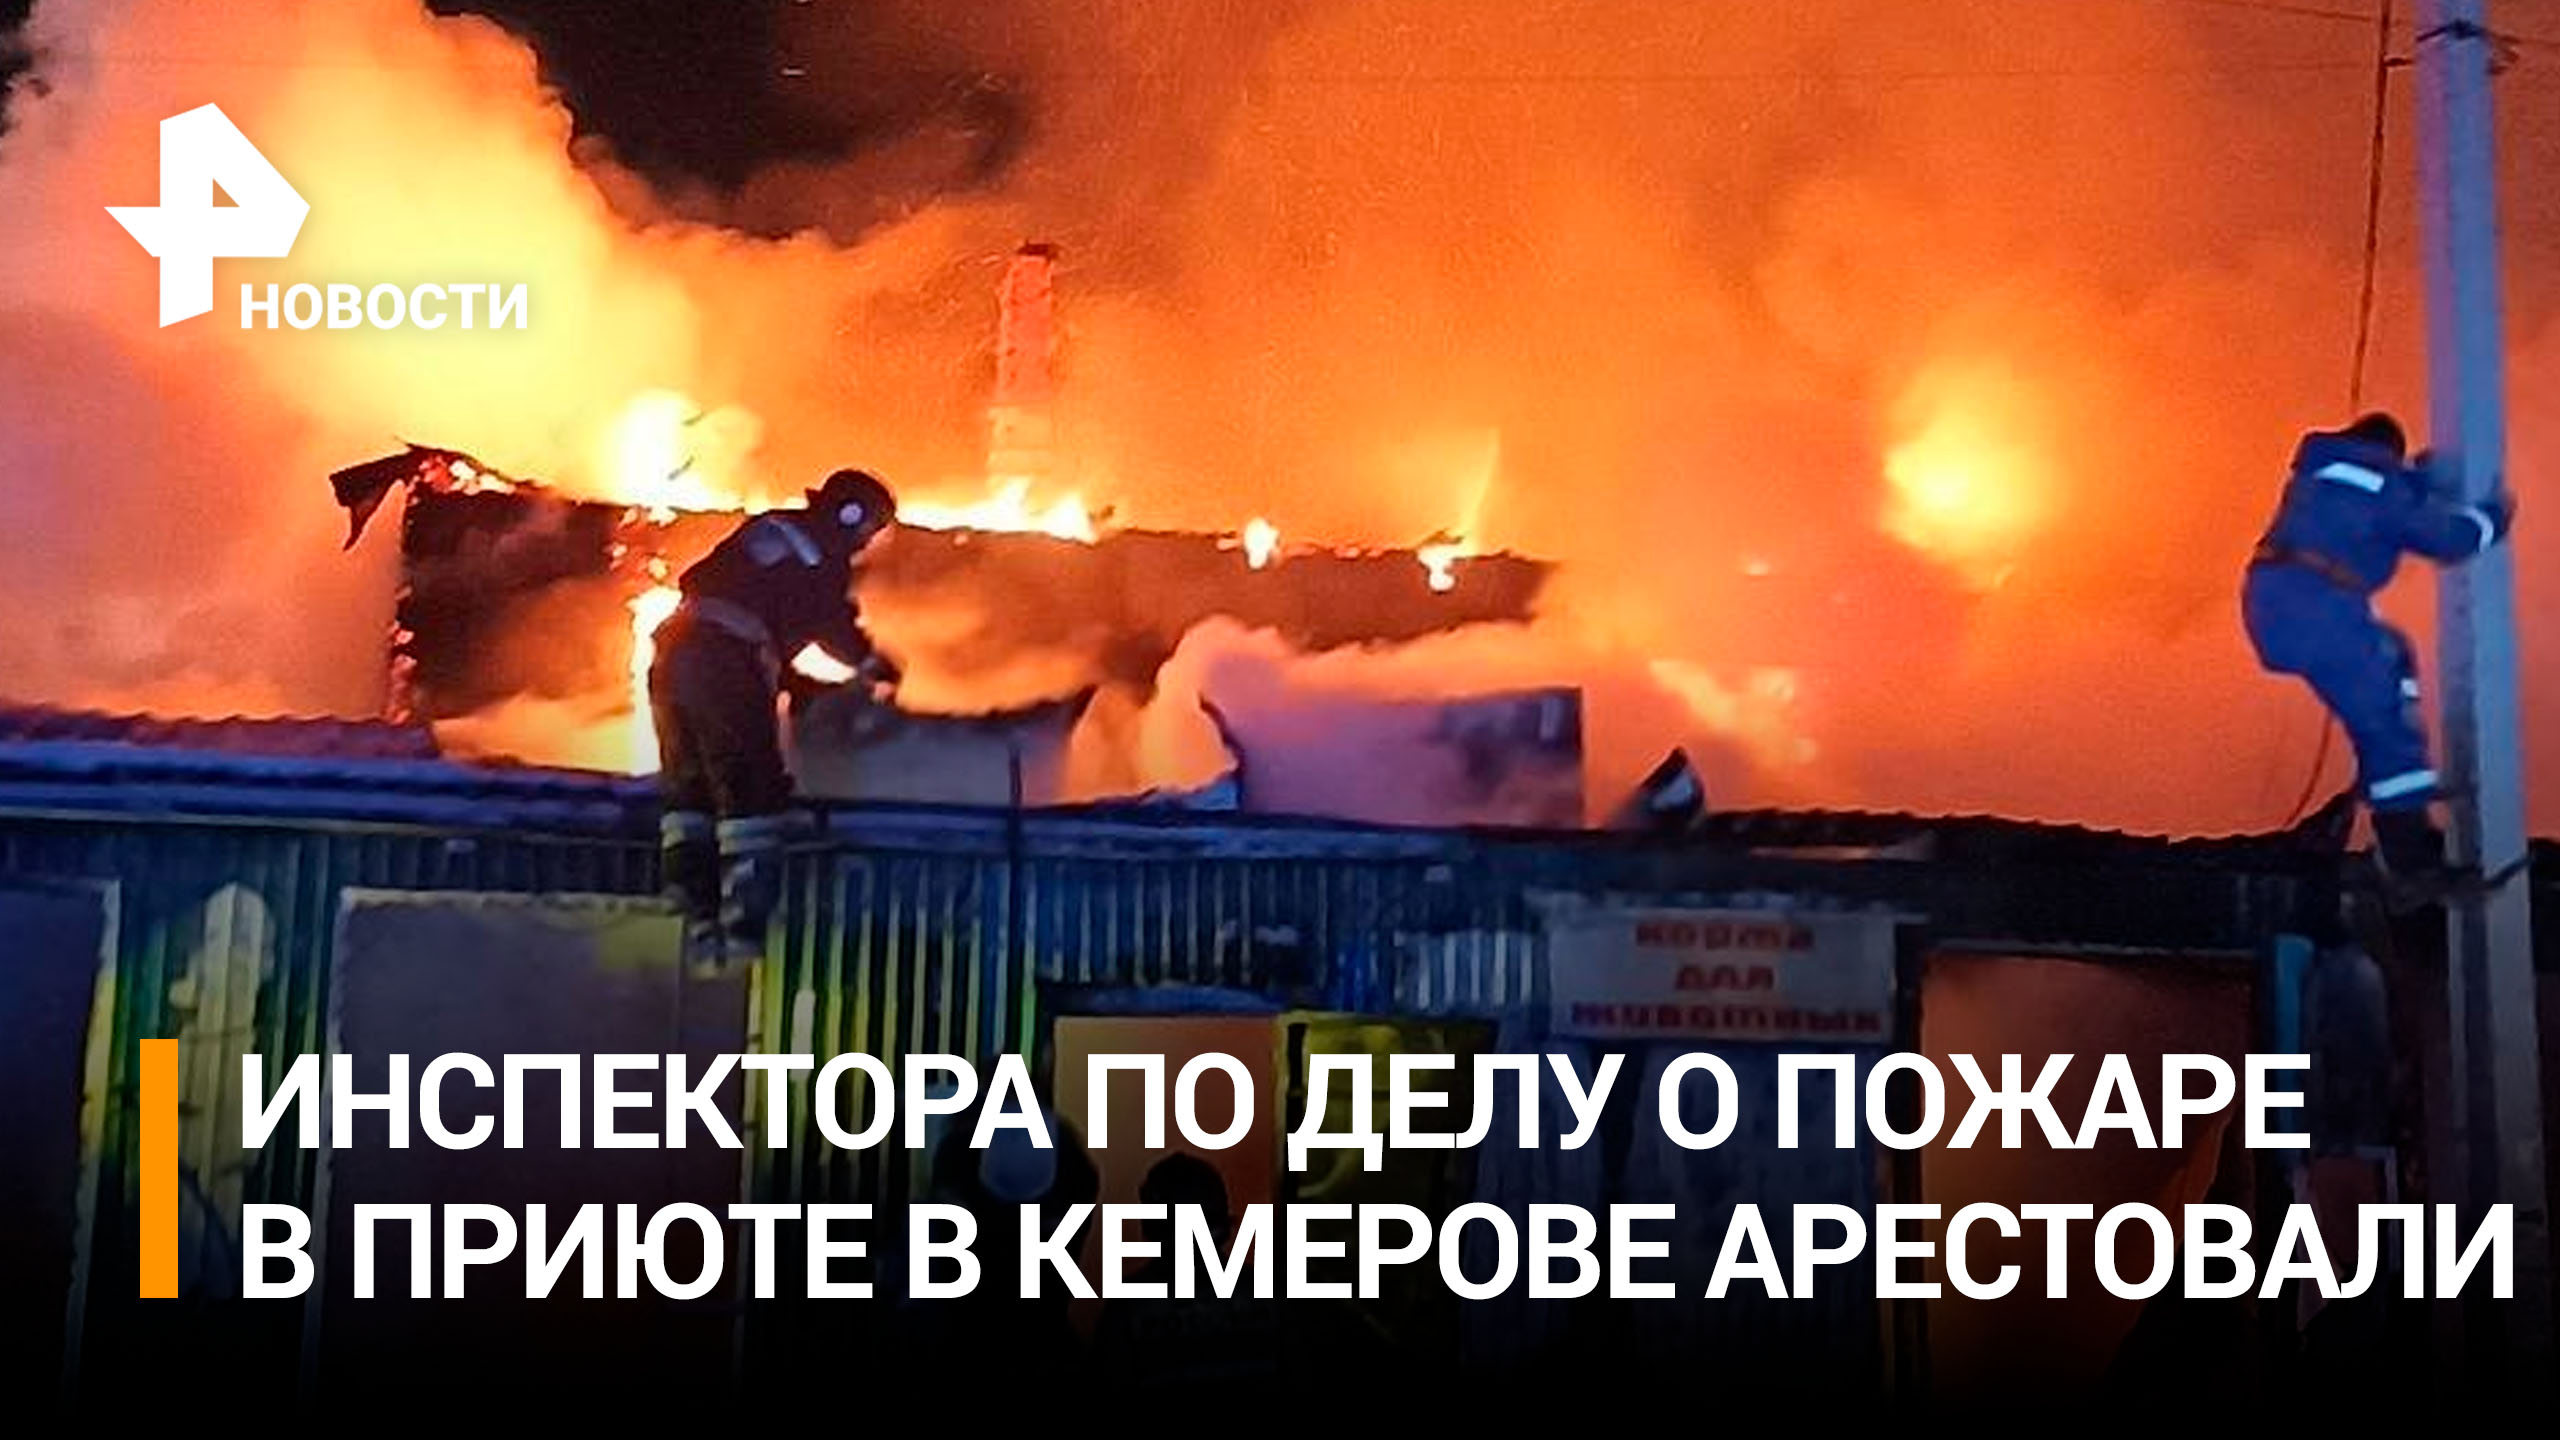 Суд арестовал инспектора по делу о пожаре в приюте в Кемерове / РЕН Новости